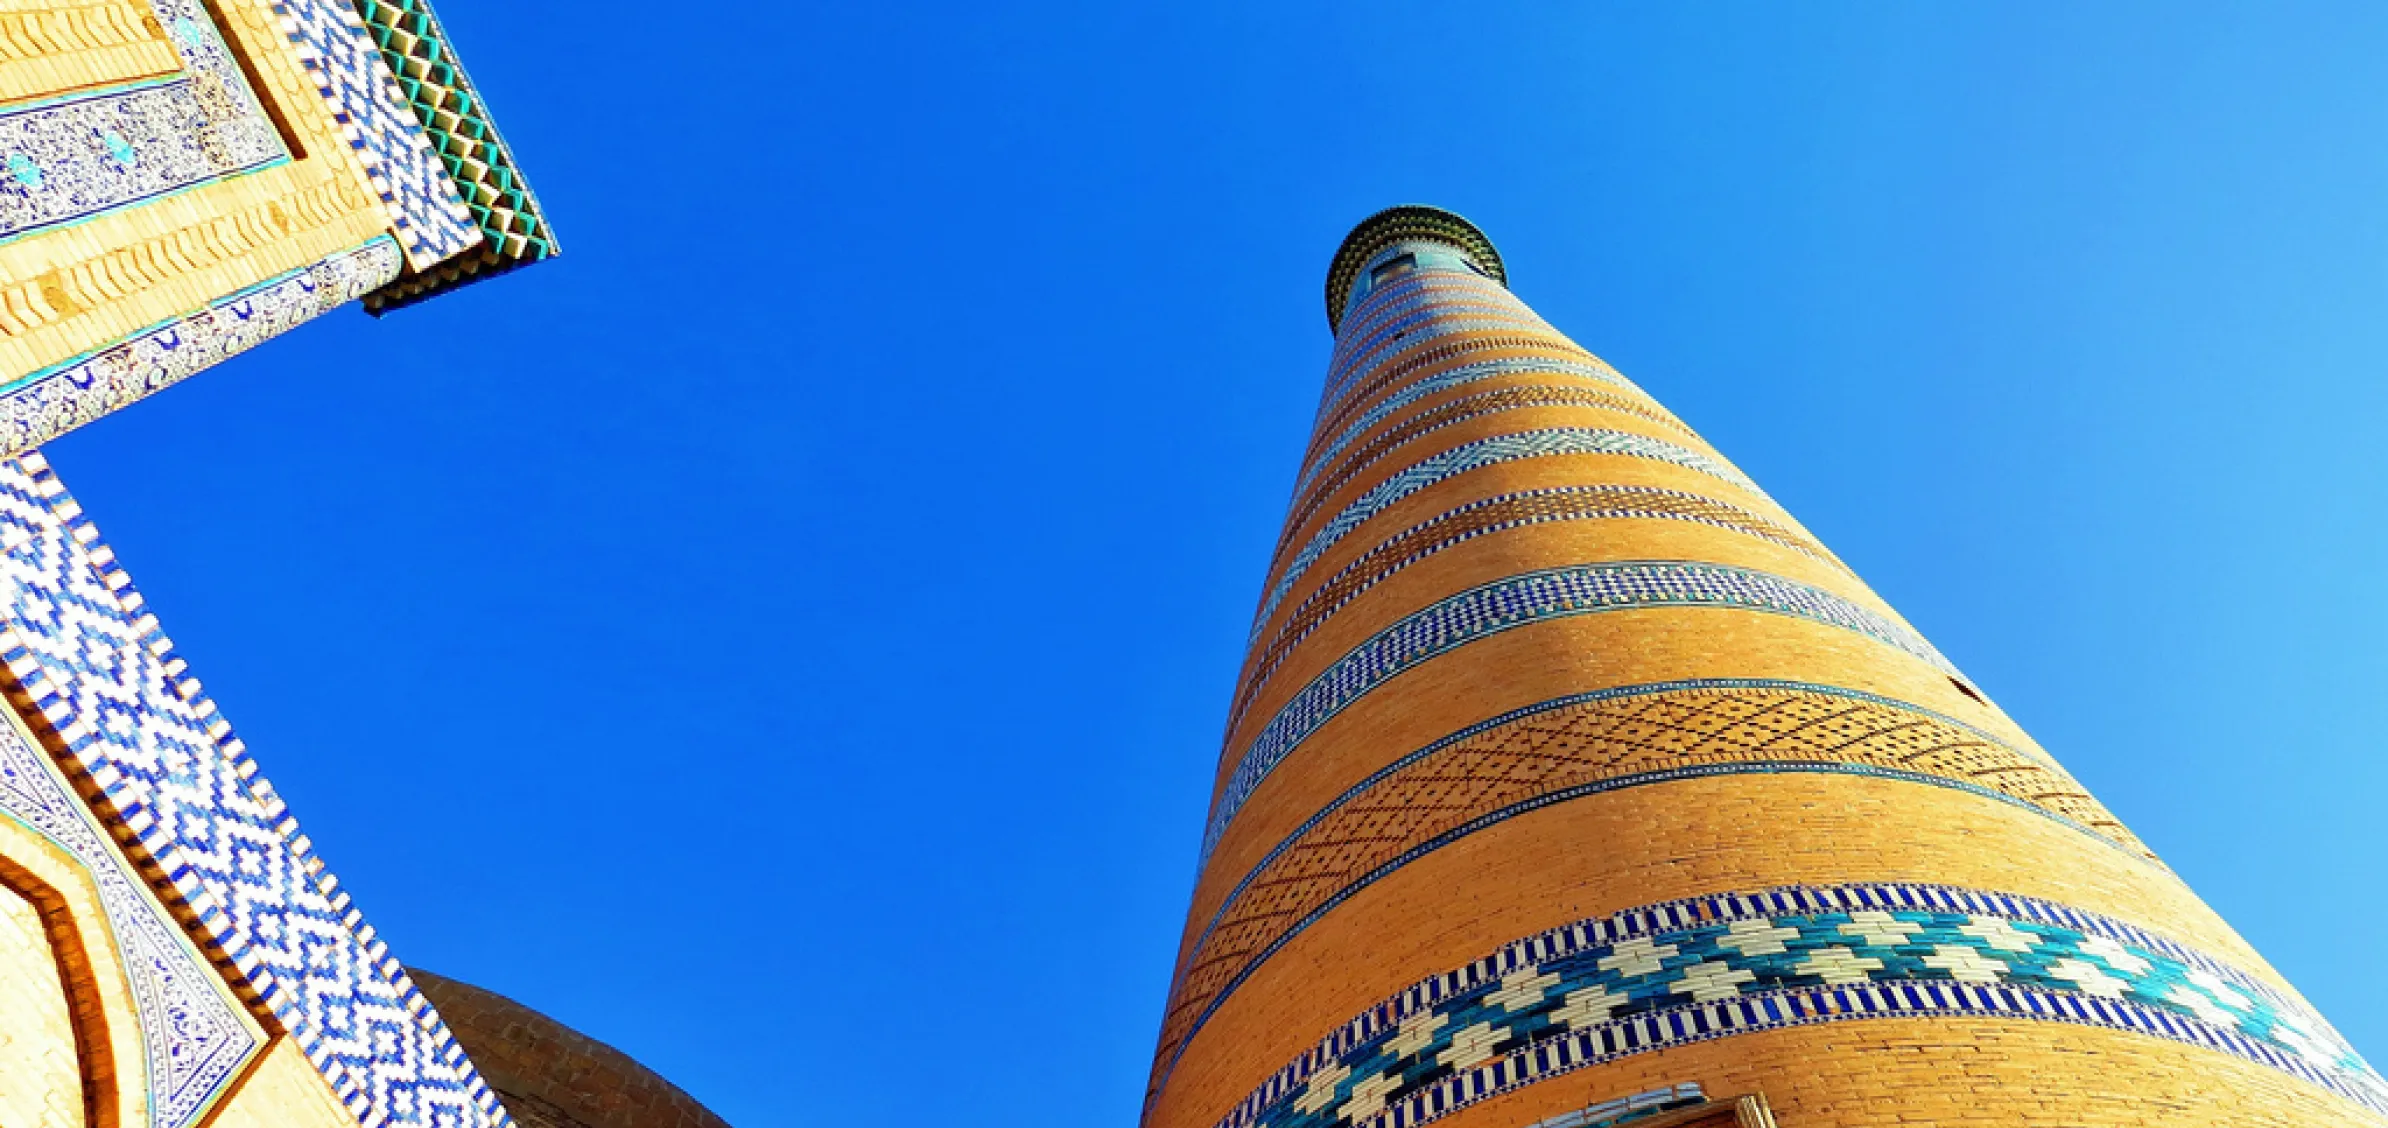 Islam Khodja Minaret, Khiva, Uzbekistan